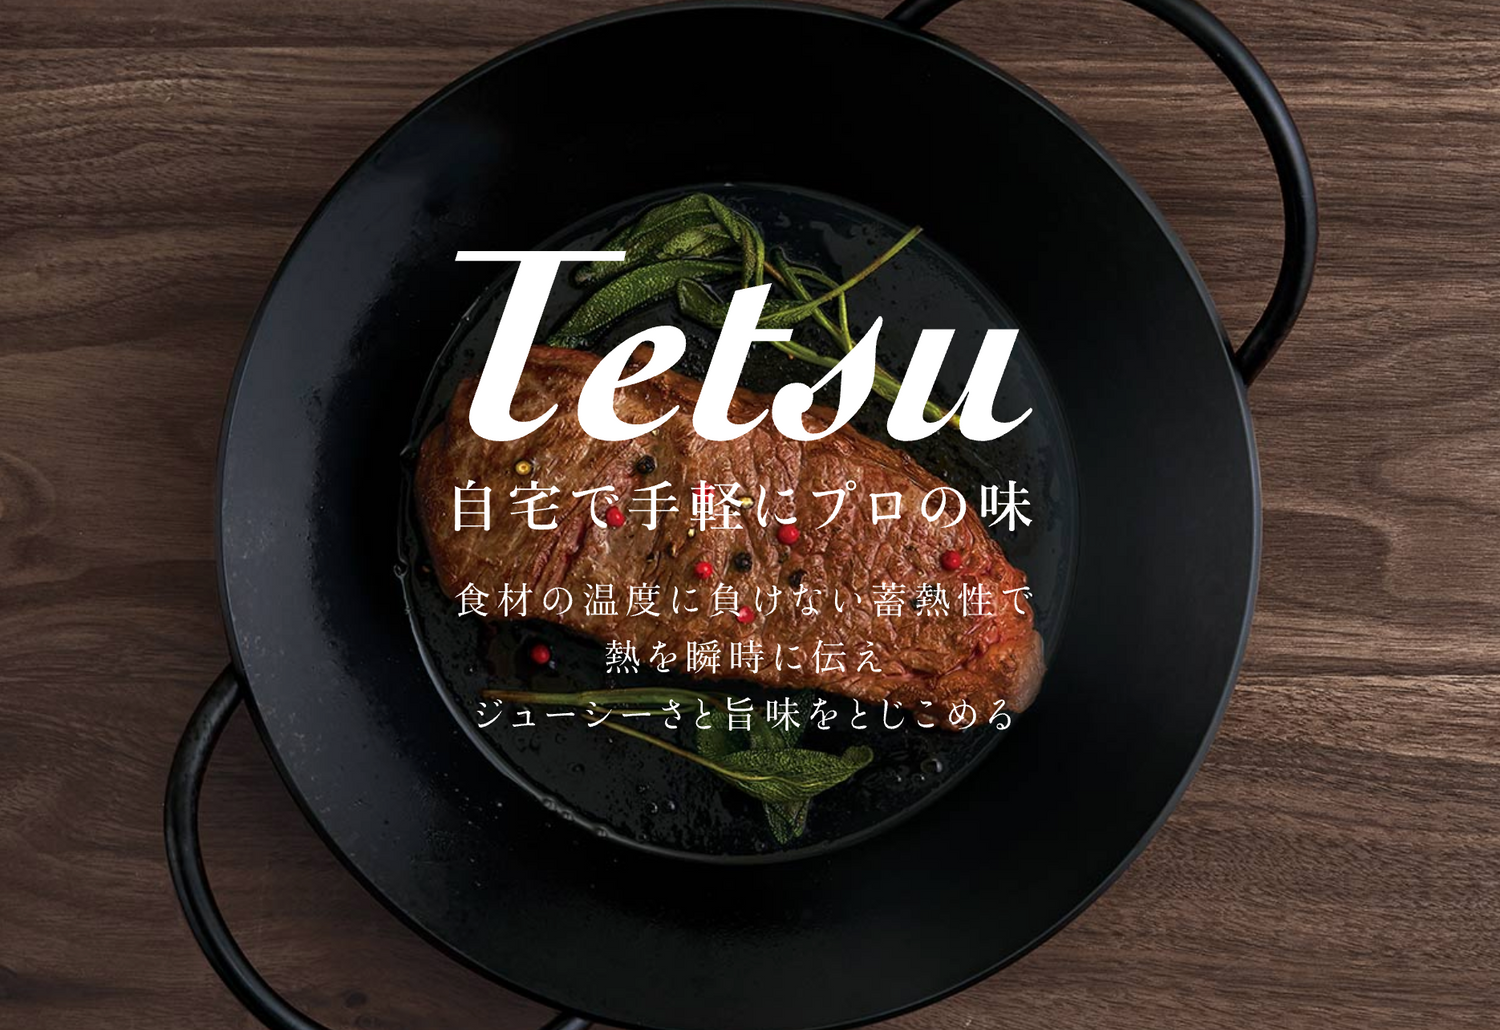 Tetsu「鉄鍋はサビるという常識をくつがえす鉄鍋」